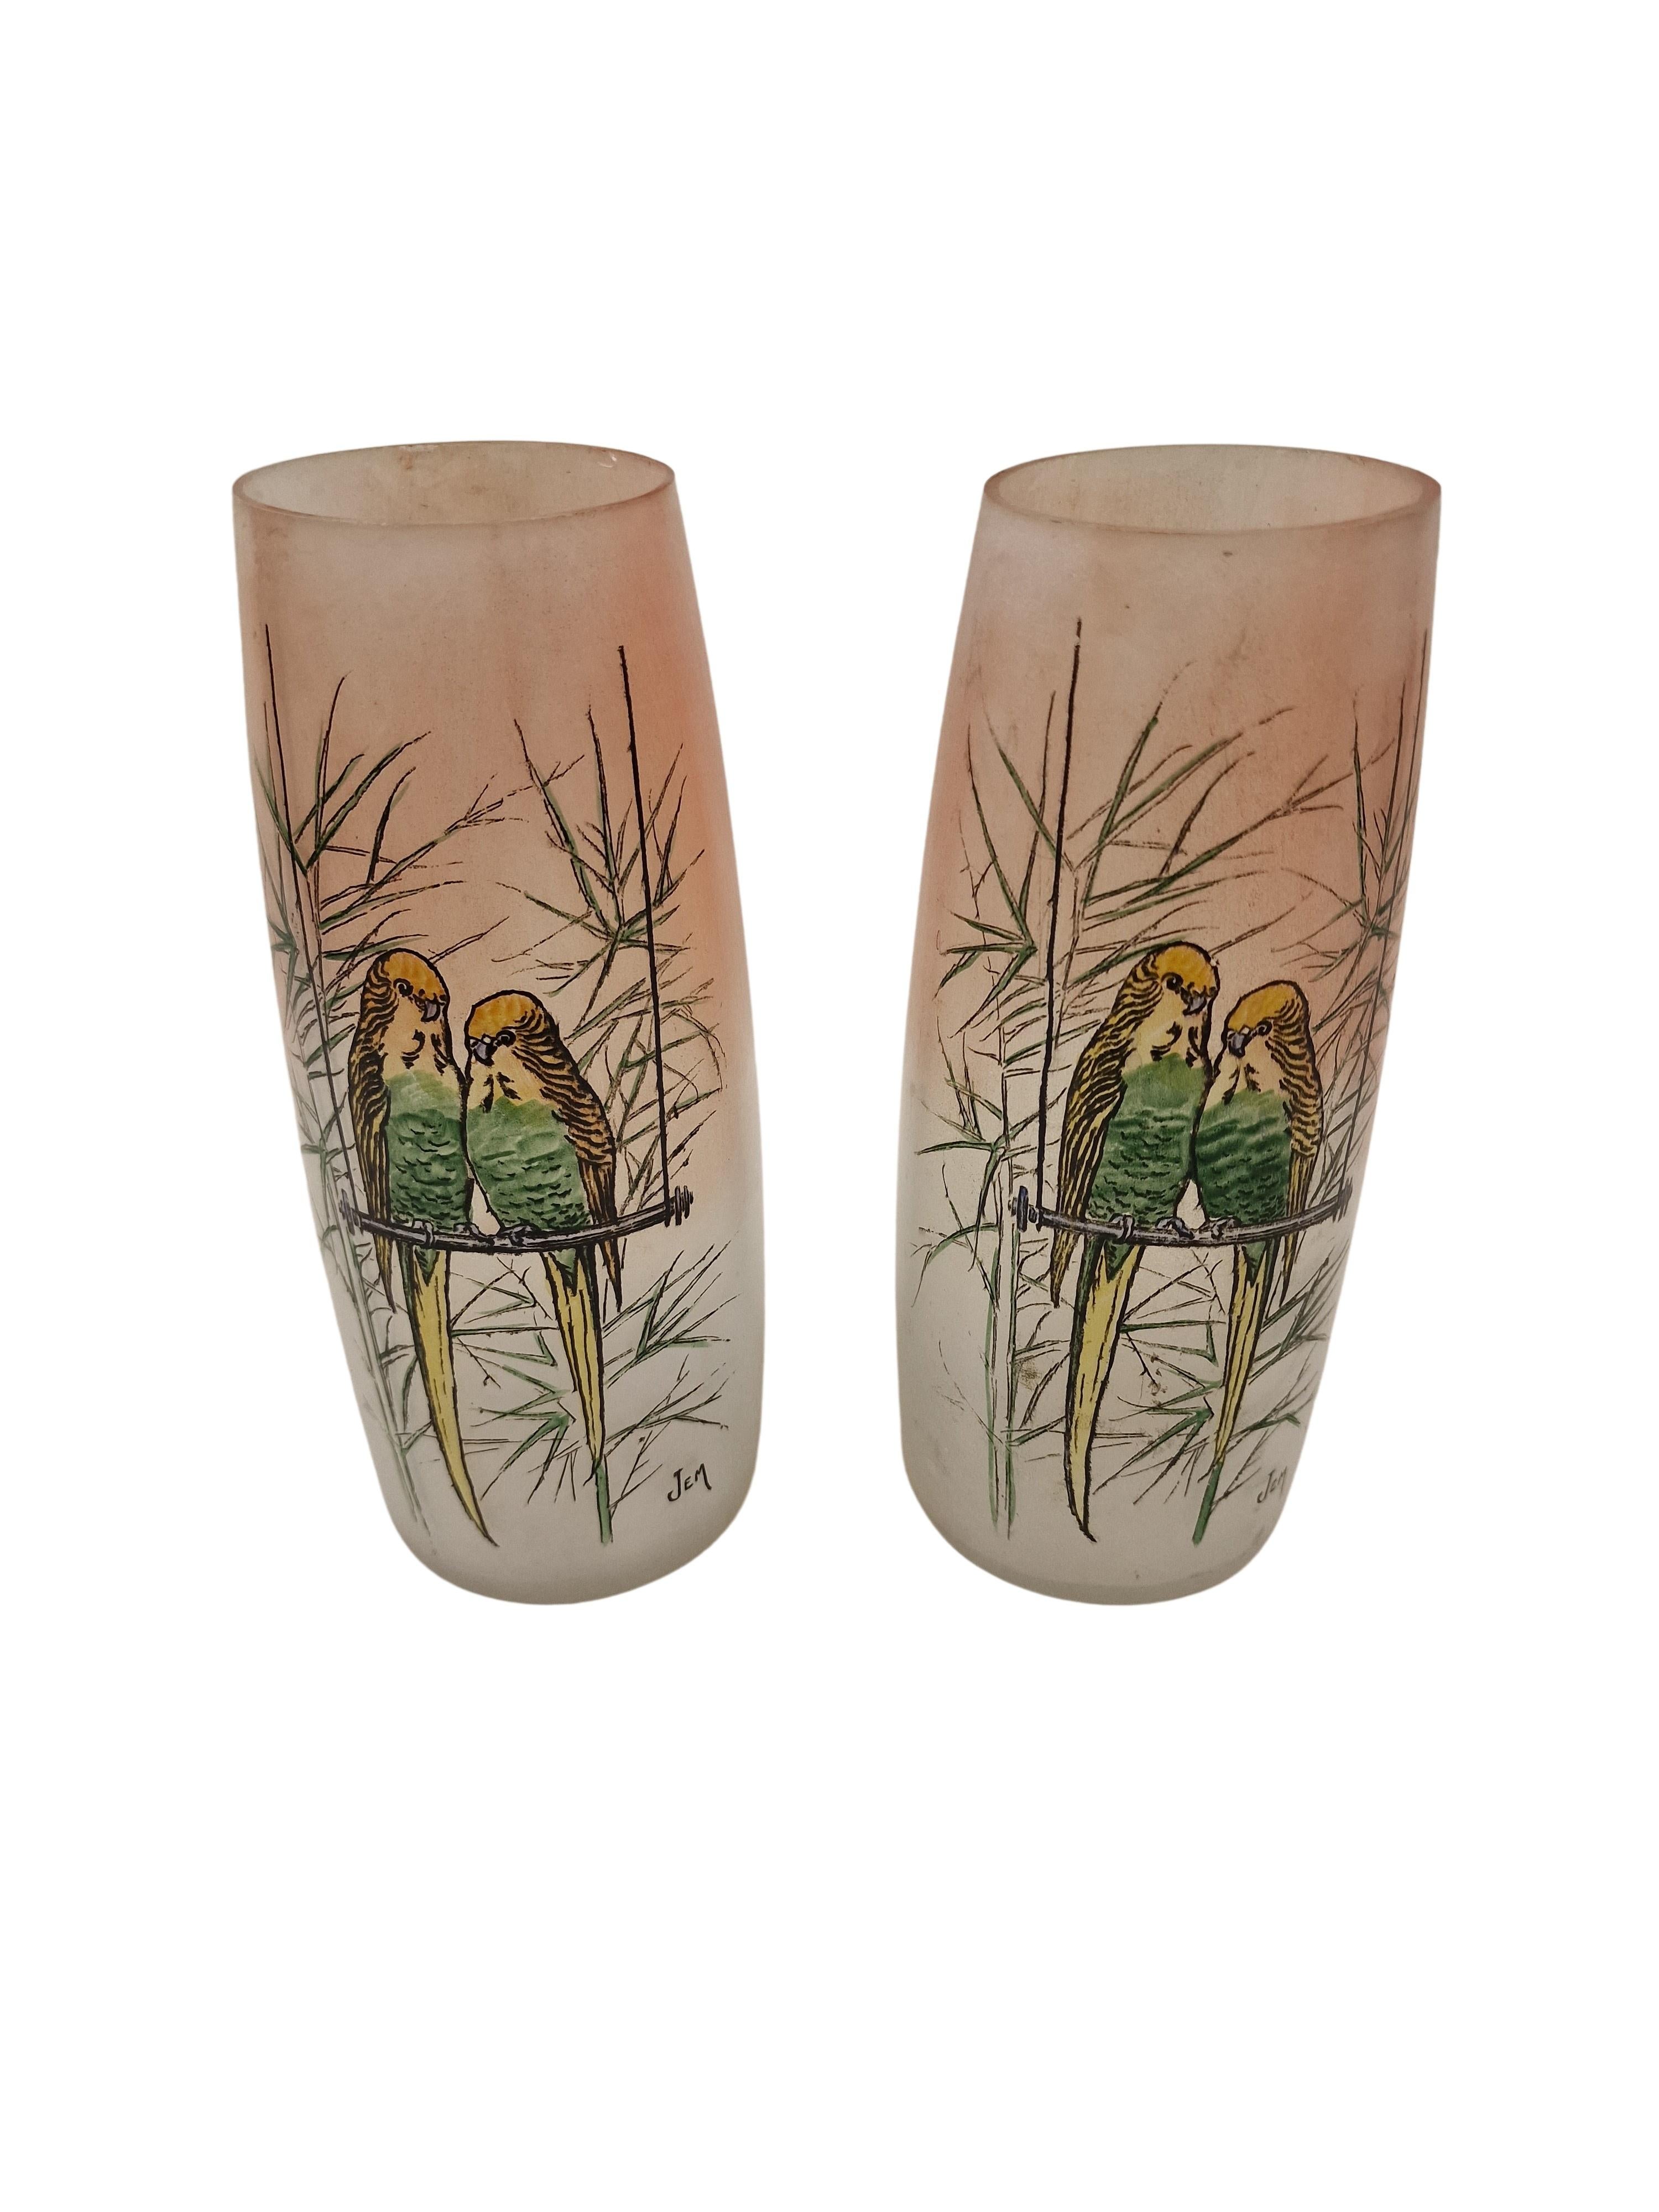 Sehr schönes Paar Blumenvasen aus der Zeit des Art déco, um 1920, von der berühmten Verrerie Legras in Frankreich. 

Die beiden Vasen haben eine kubische, erhabene Form und sind durchgehend in Pastellfarben gehalten. 
Die Vasen sind mit hochwertiger